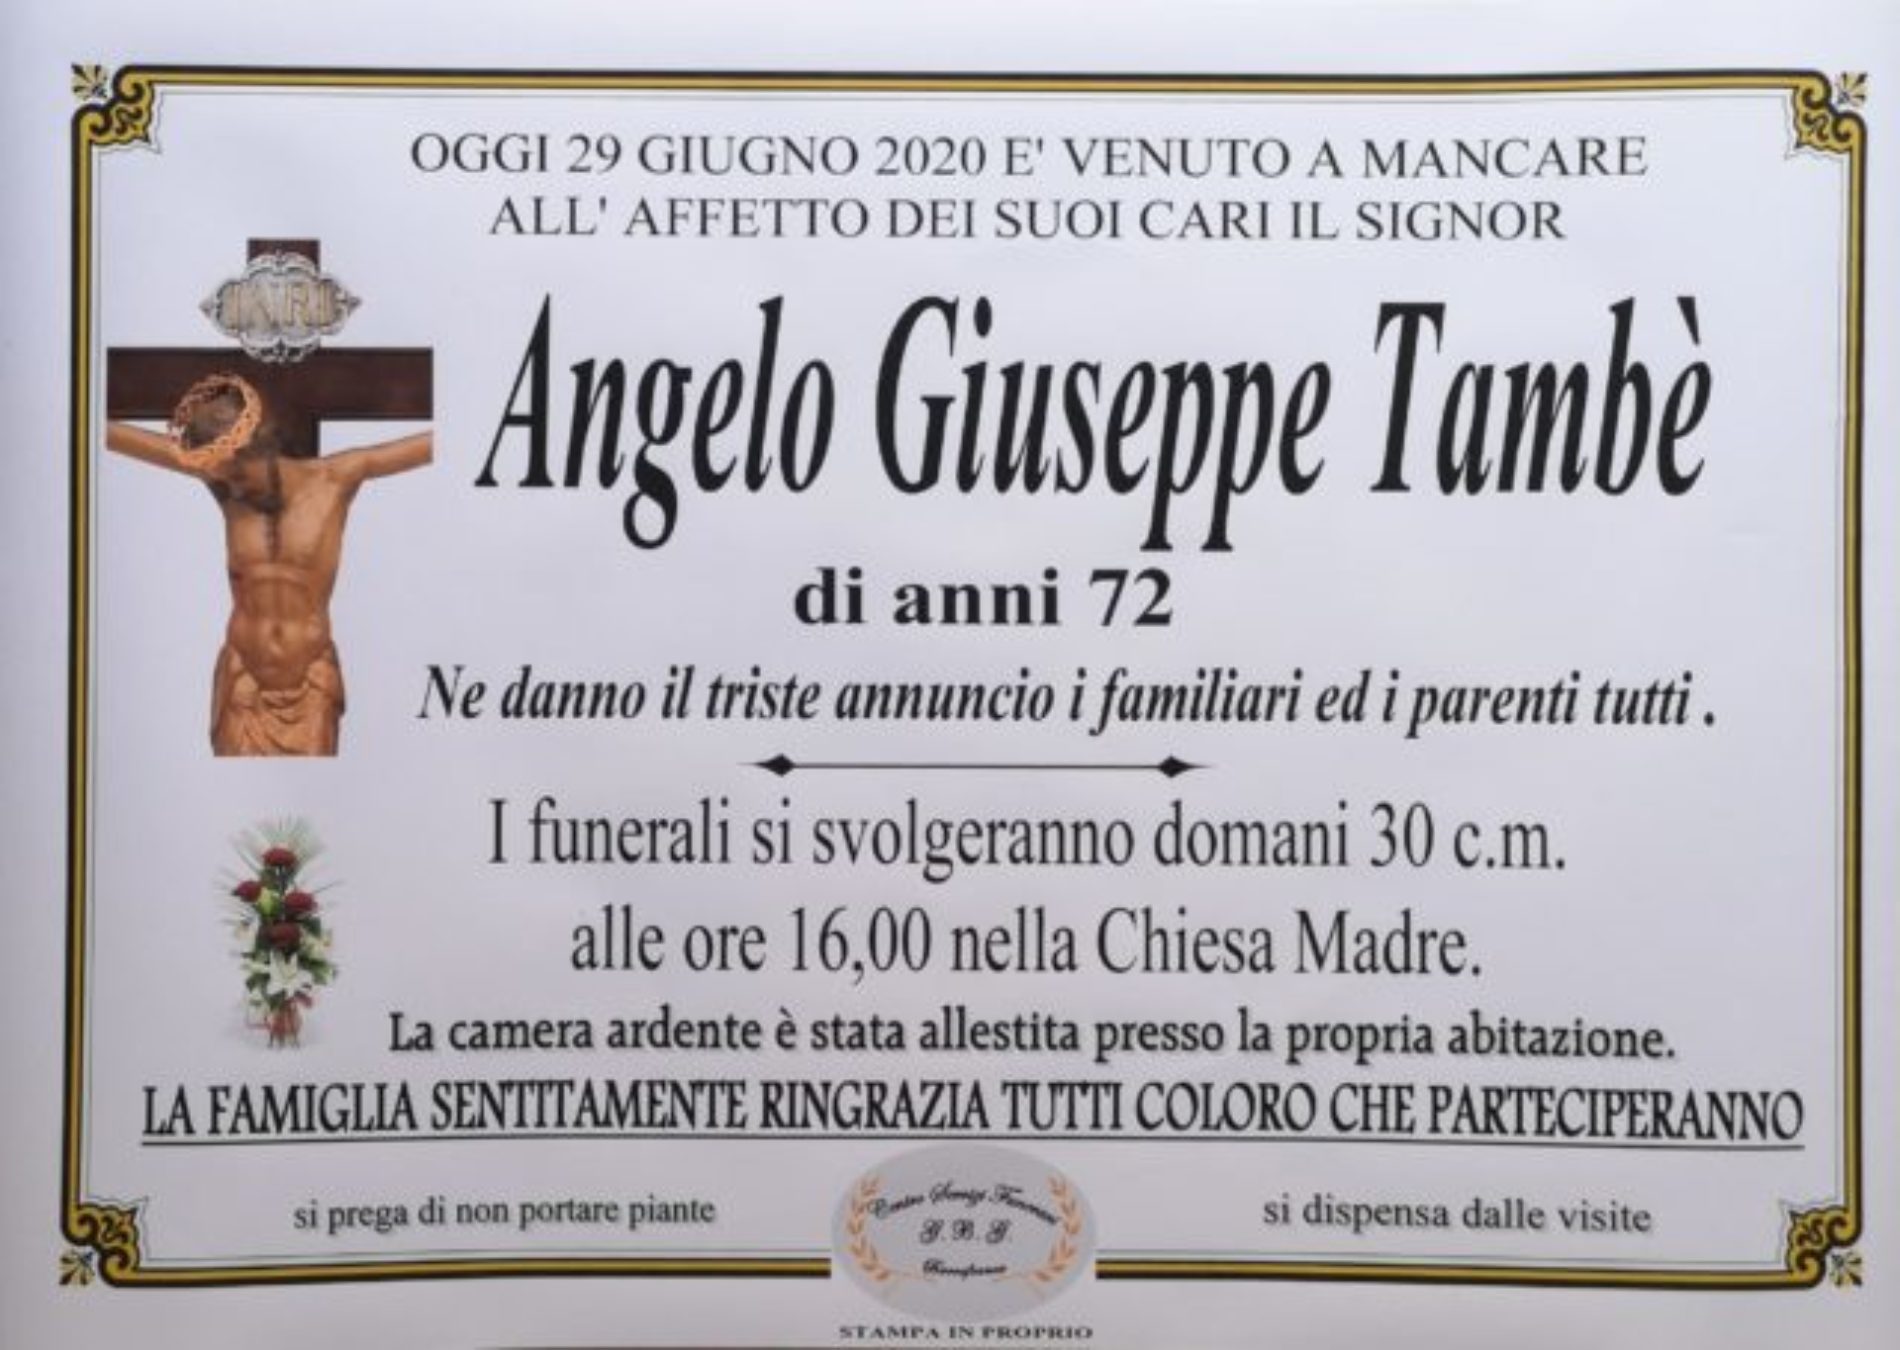 Annuncio Centro servizi funerari G.B.G. Angelo Giuseppe Tambè 72 anni